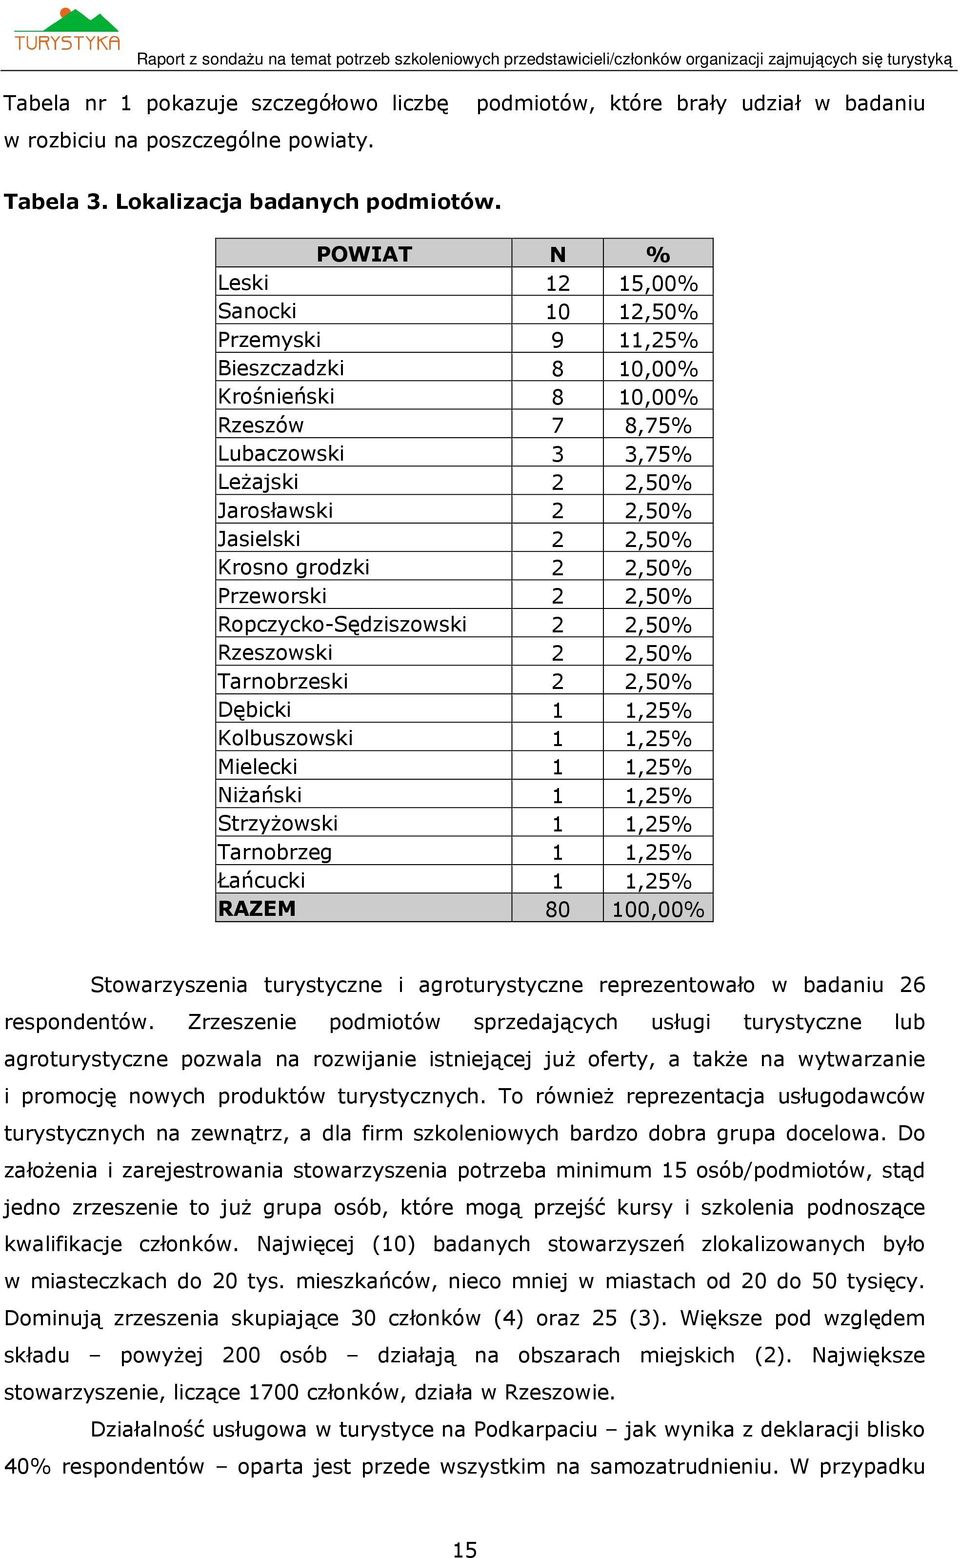 grodzki 2 2,50% Przeworski 2 2,50% Ropczycko-Sędziszowski 2 2,50% Rzeszowski 2 2,50% Tarnobrzeski 2 2,50% Dębicki,25% Kolbuszowski,25% Mielecki,25% Niżański,25% Strzyżowski,25% Tarnobrzeg,25%